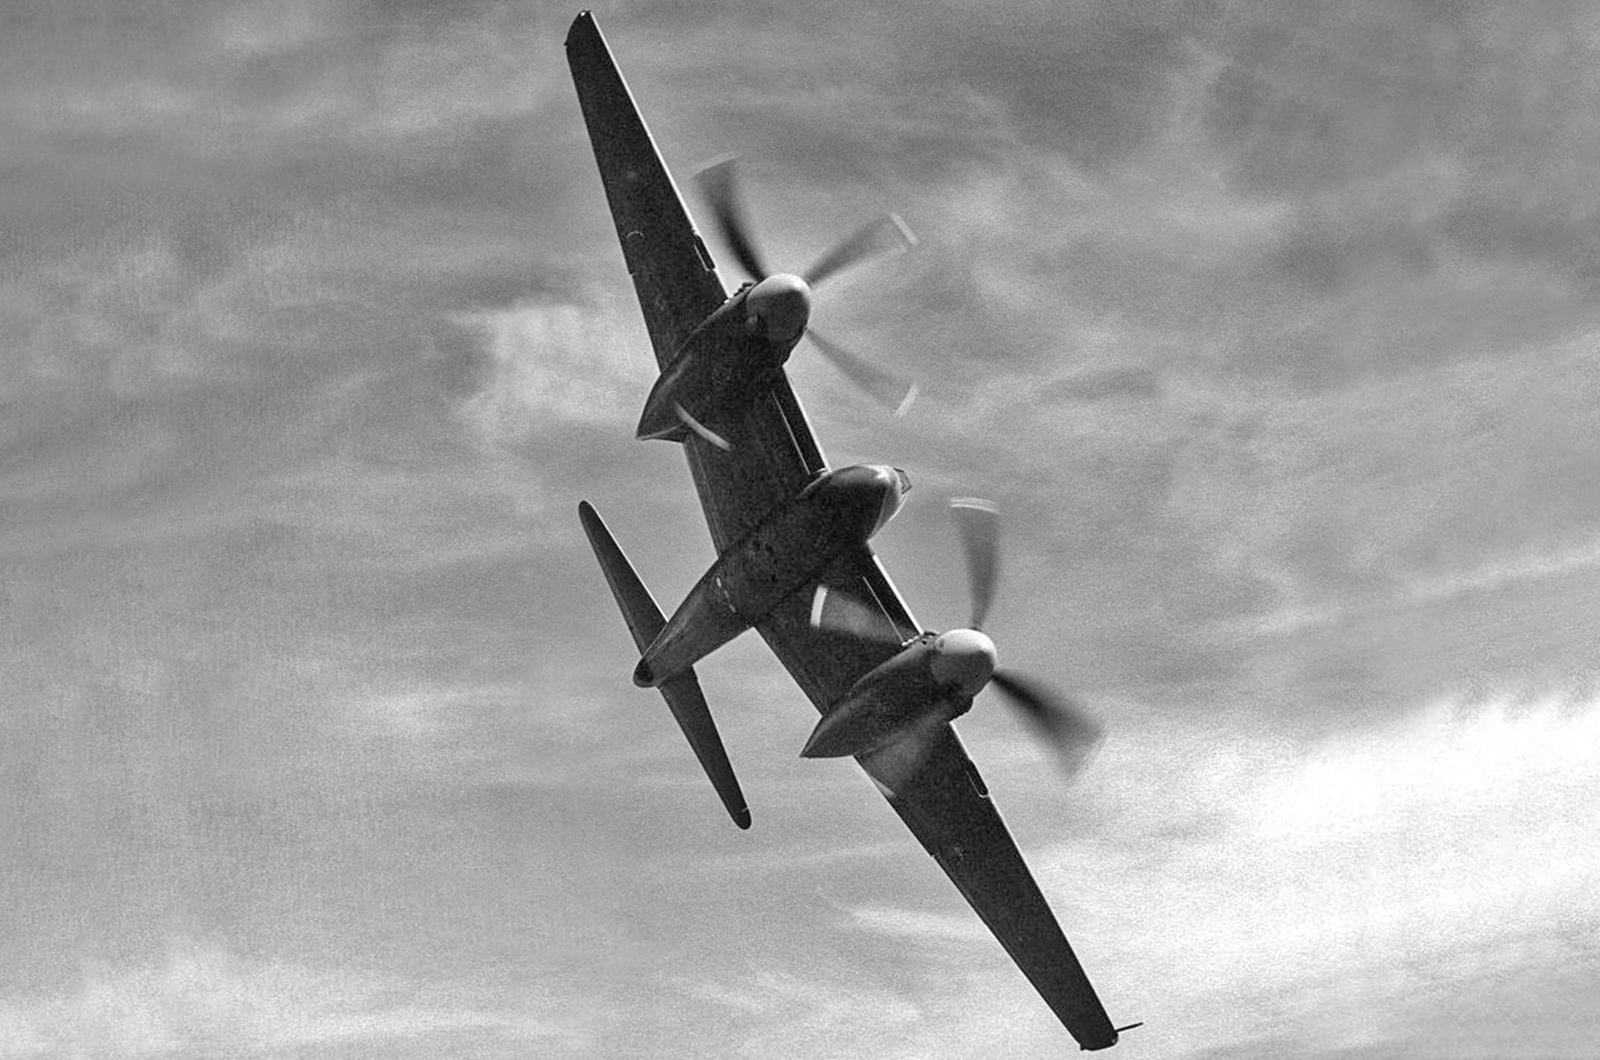 <p>Le Hornet (et la version <strong>Sea Hornet </strong>destinée aux porte-avions) était <em>l'</em>apogée de l'école minimaliste de conception d'avions de combat, qui, comme le <strong>Westland Whirlwind </strong>précédent, associait une <strong>surface mouillée </strong>minimale (la surface d'un avion qui rencontre l'air) à une puissance maximale. Le Hornet était un étonnant chef-d'œuvre de conception aéronautique.</p><p>Capable d'atteindre une vitesse fulgurante de 764 km/h et armé jusqu'aux dents de quatre canons de 20 mm, il disposait également d'un excellent rayon d'action et pouvait voler à de grandes hauteurs. Le Hornet était le meilleur chasseur britannique bimoteur jamais piloté.</p>